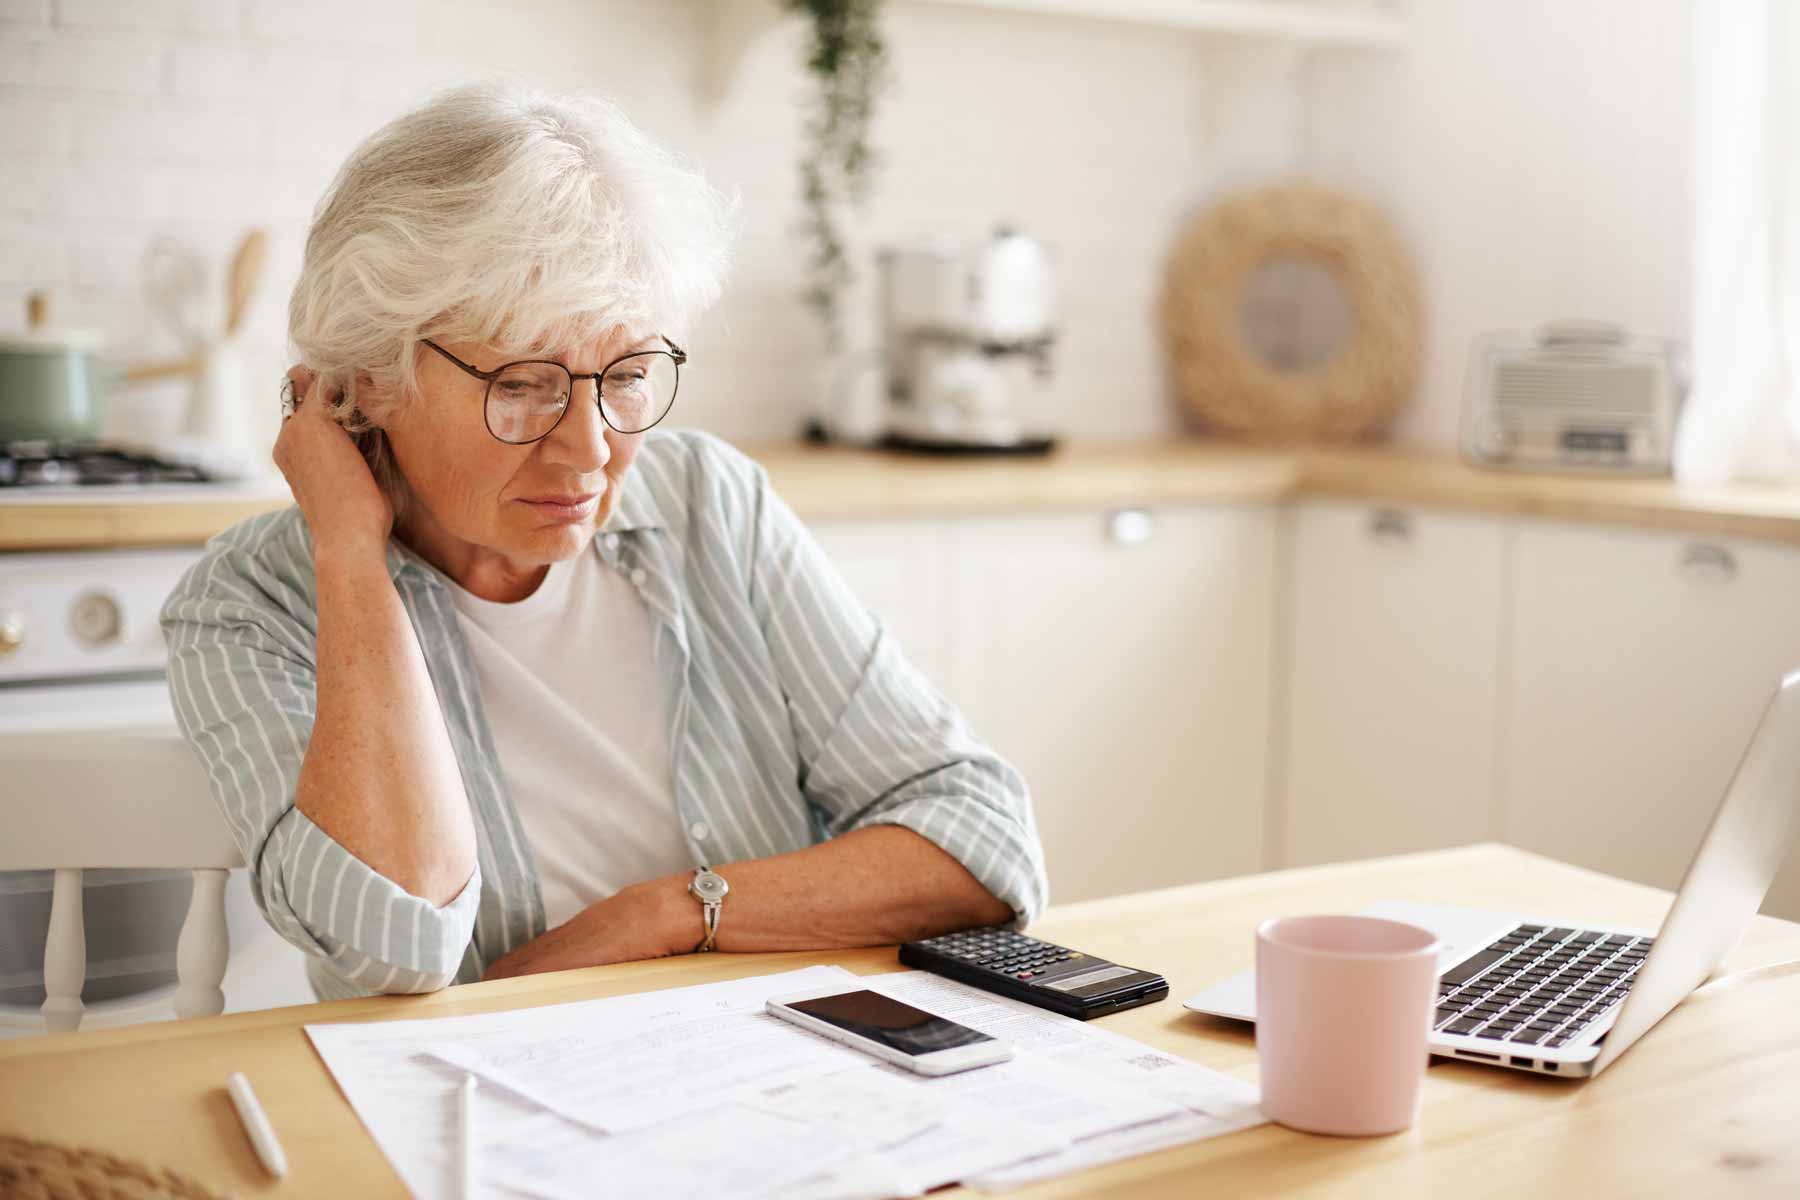 5 Retirement Concerns Too Often Overlooked